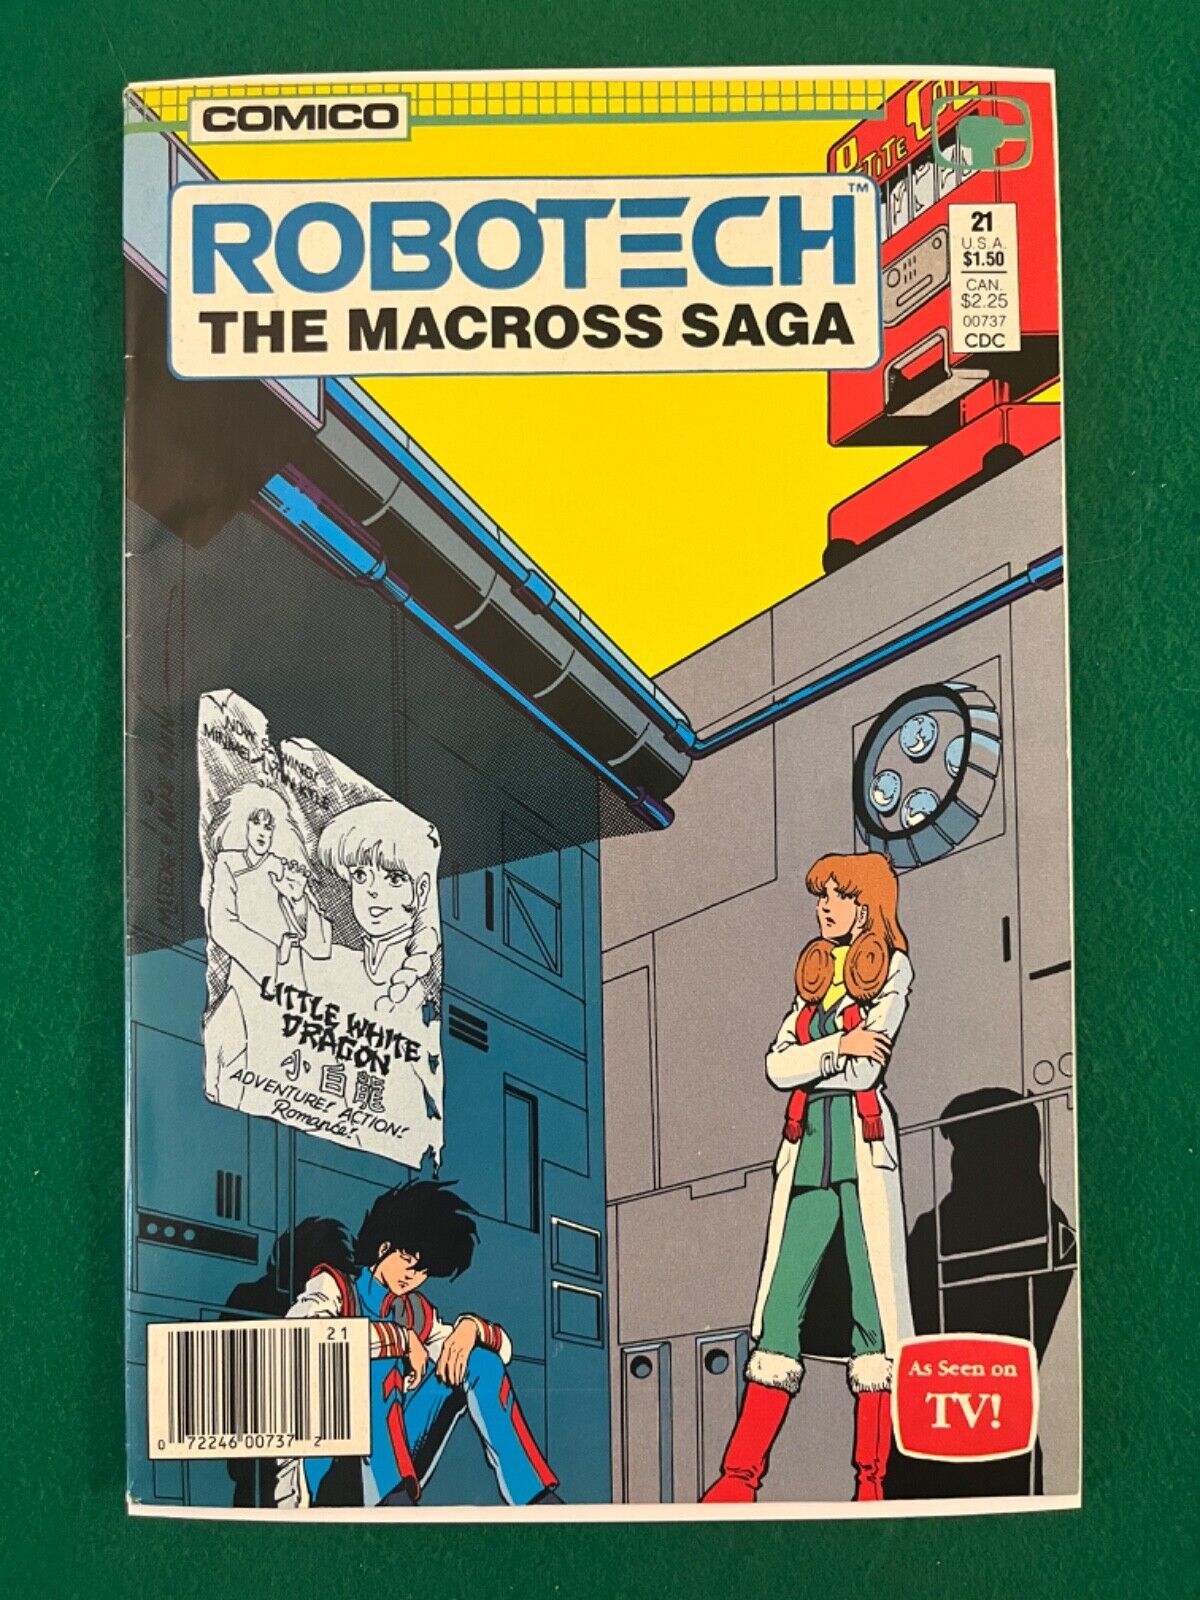 Comico Robotech: The Macross Saga #21 Aug 1987 (VF+)